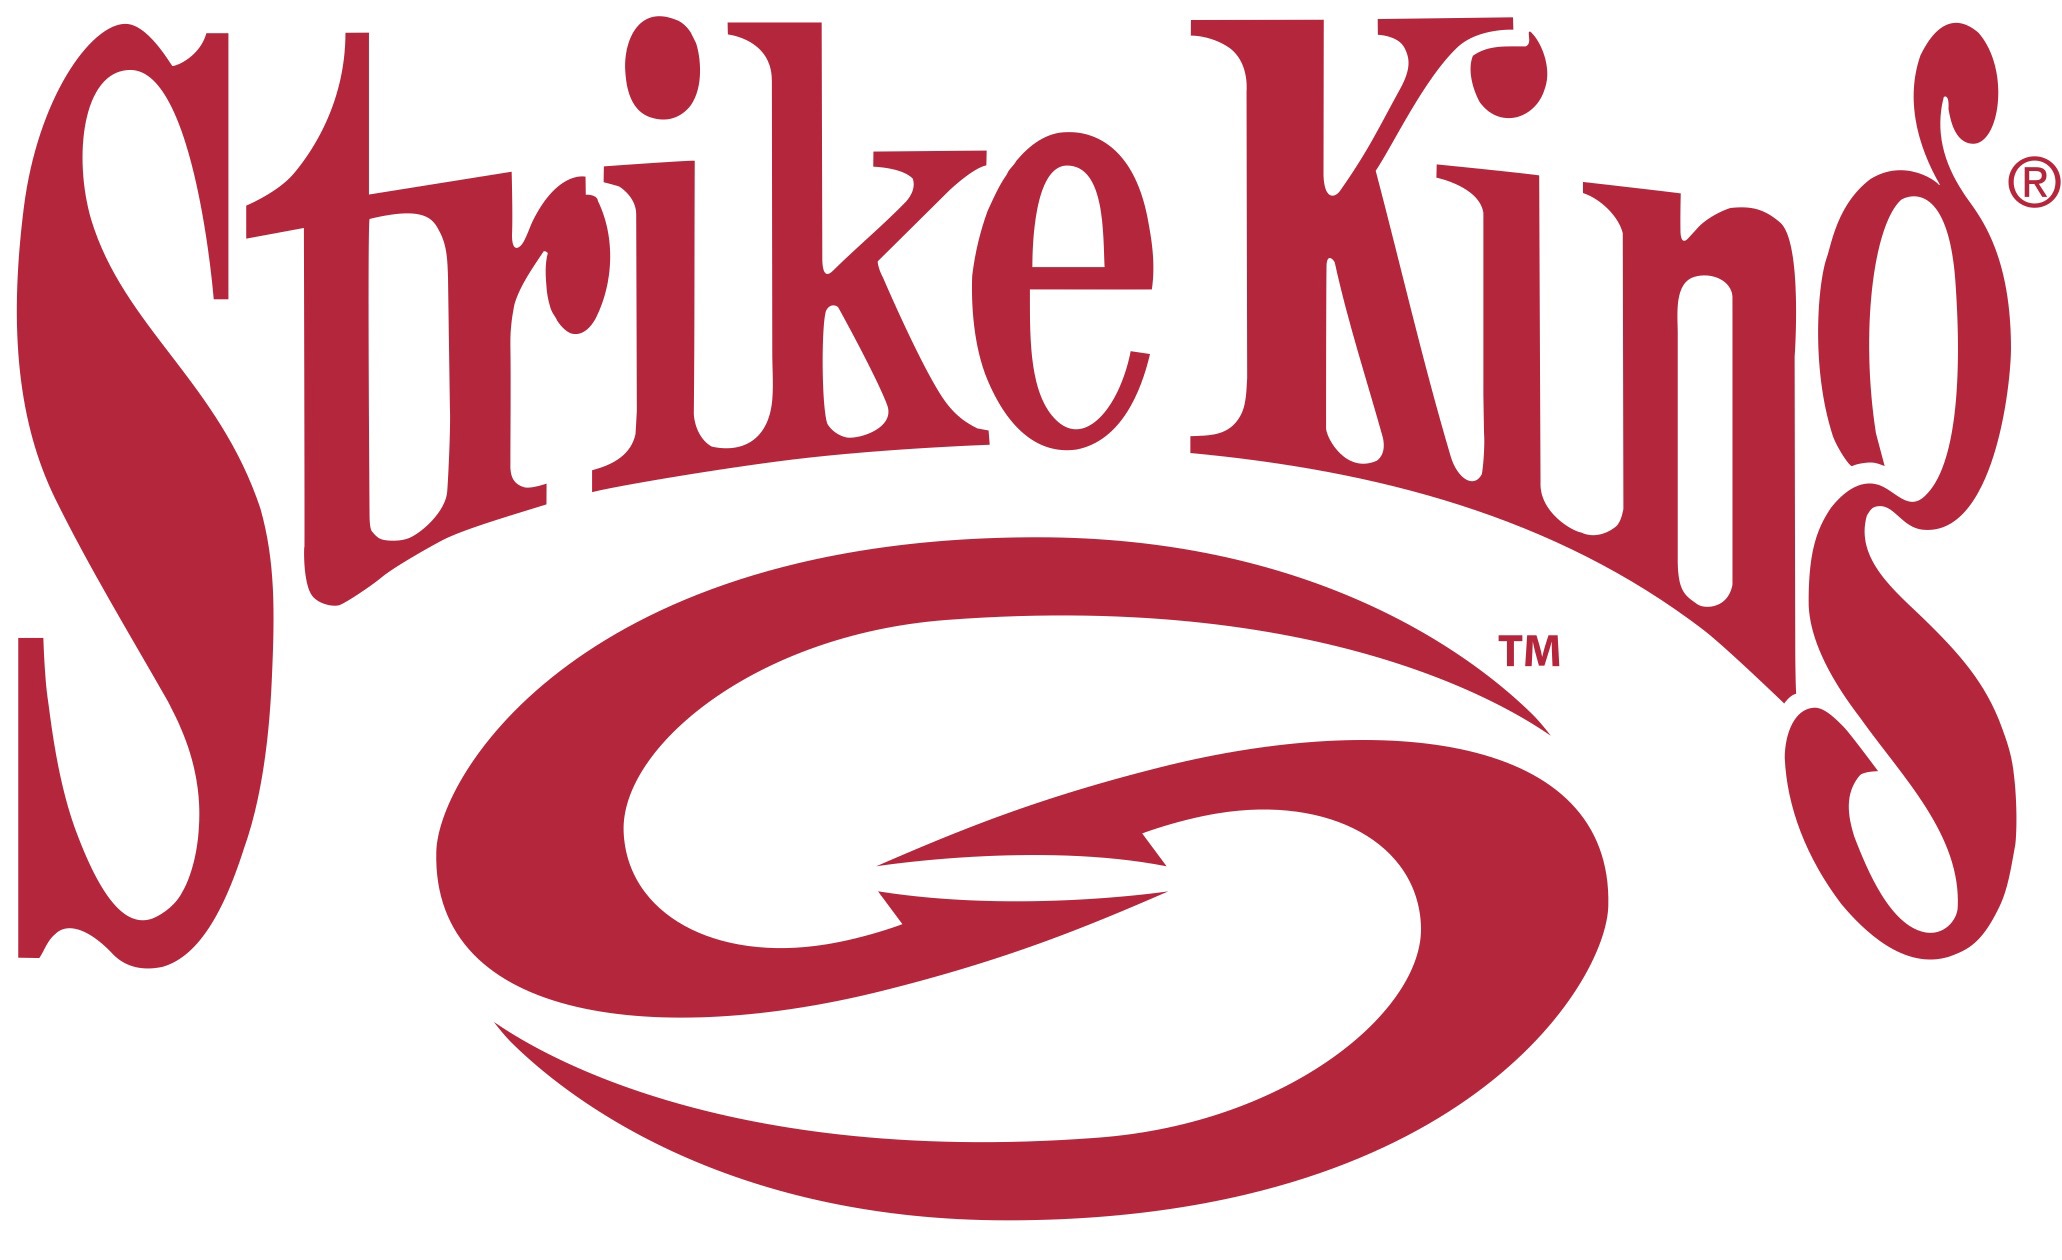 Strike King logo